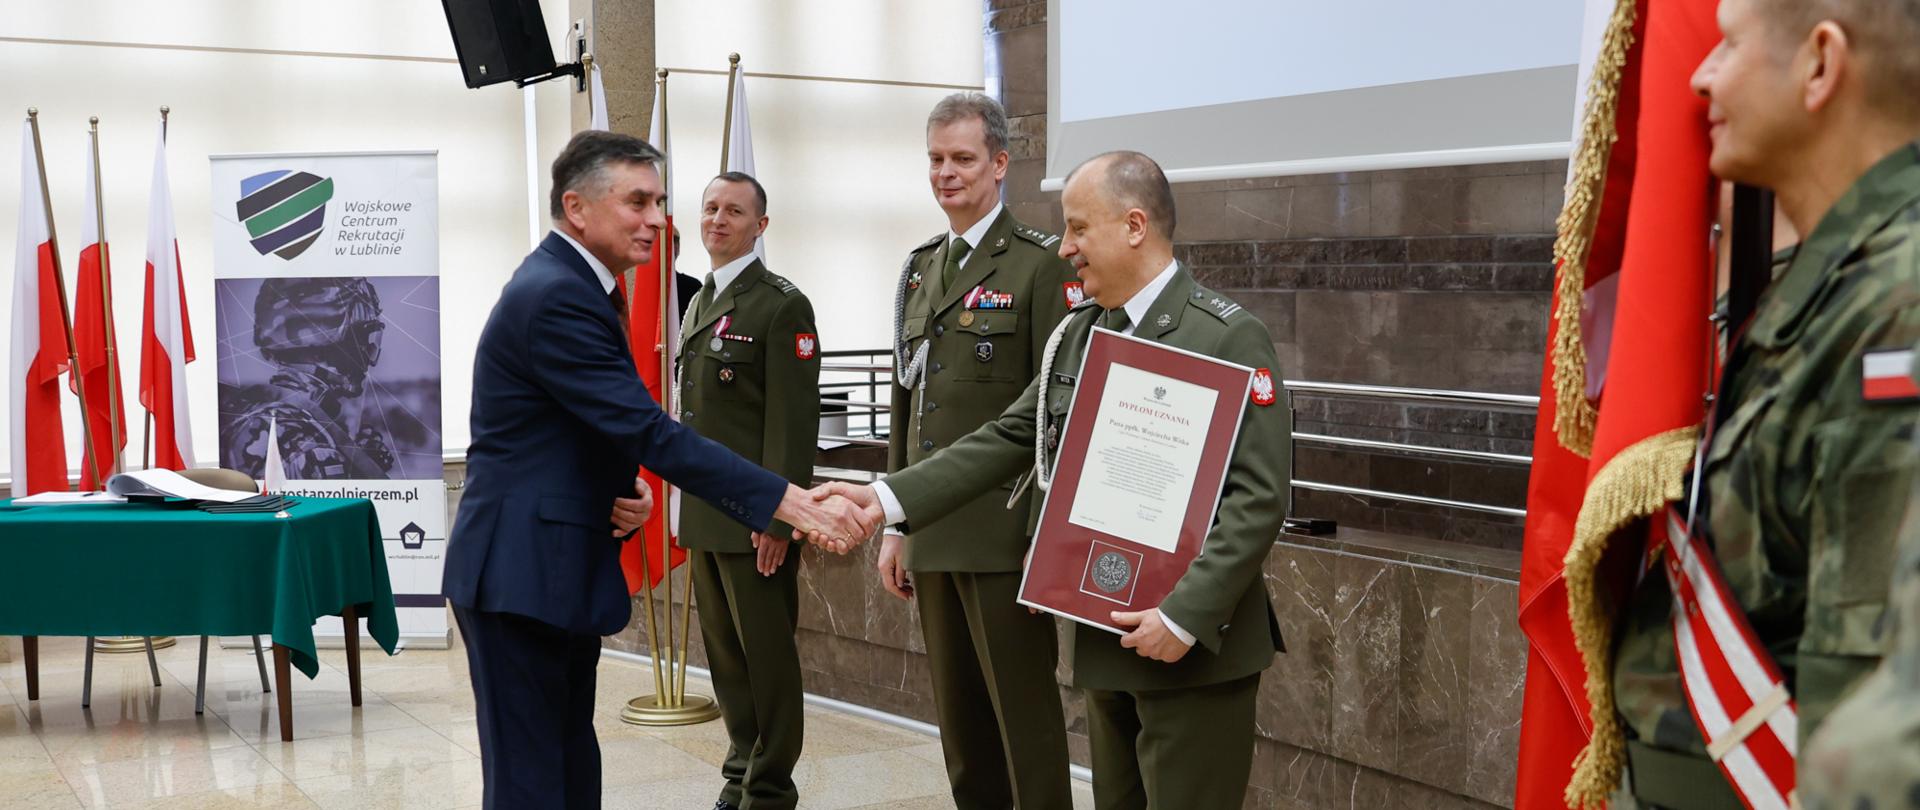 Przekazanie obowiązków szefa Wojskowego Centrum Rekrutacji w Lublinie